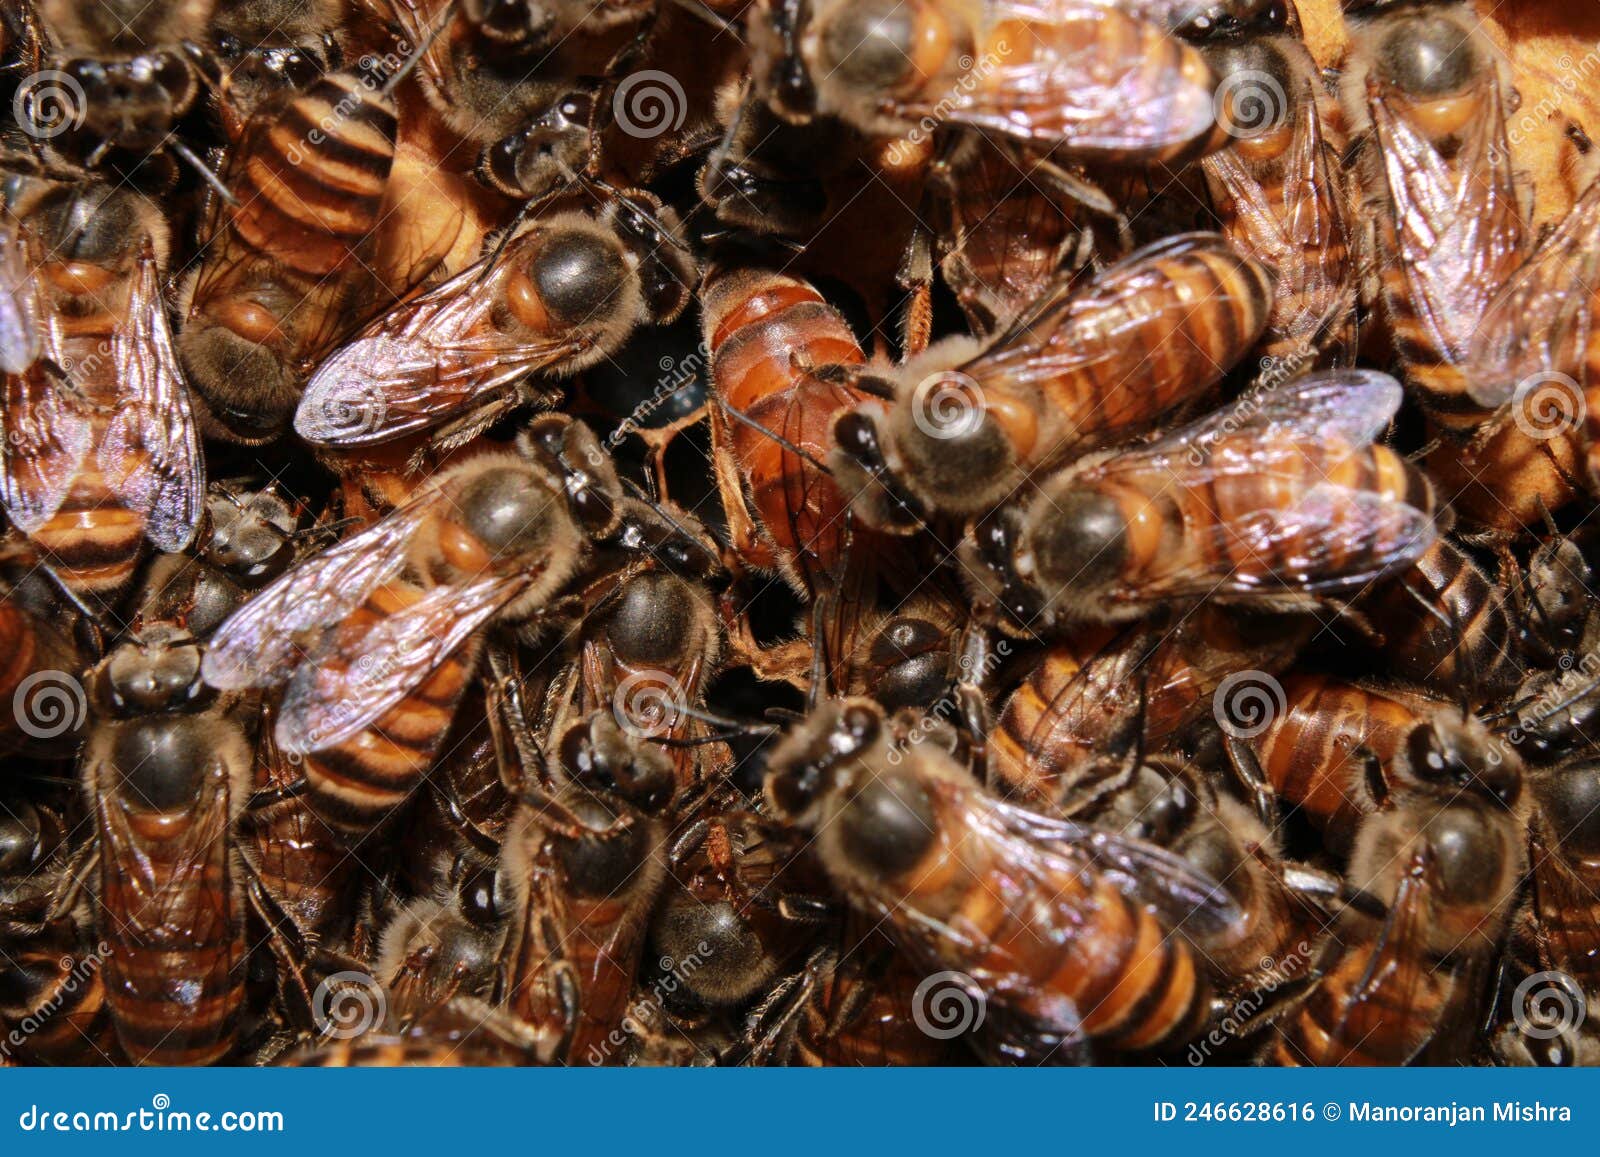 中蜂蜜蜂王种王纯种高产优质土蜂交尾新开产卵王阿坝广西处女王-淘宝网